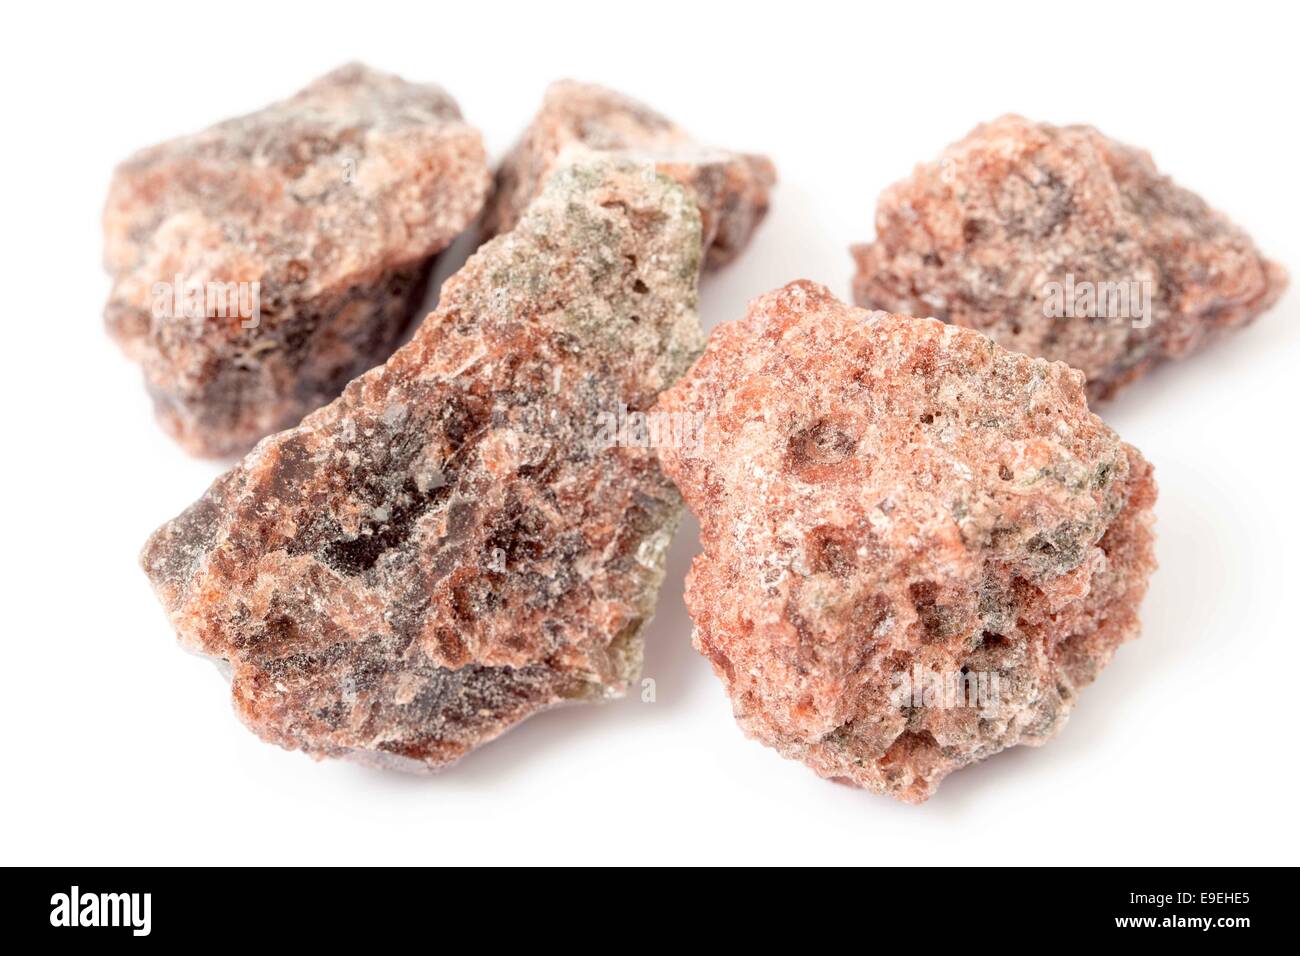 Sel noir, une variété impure de sel de roche contenant des composés de soufre, utilisé dans la cuisine indienne. Banque D'Images